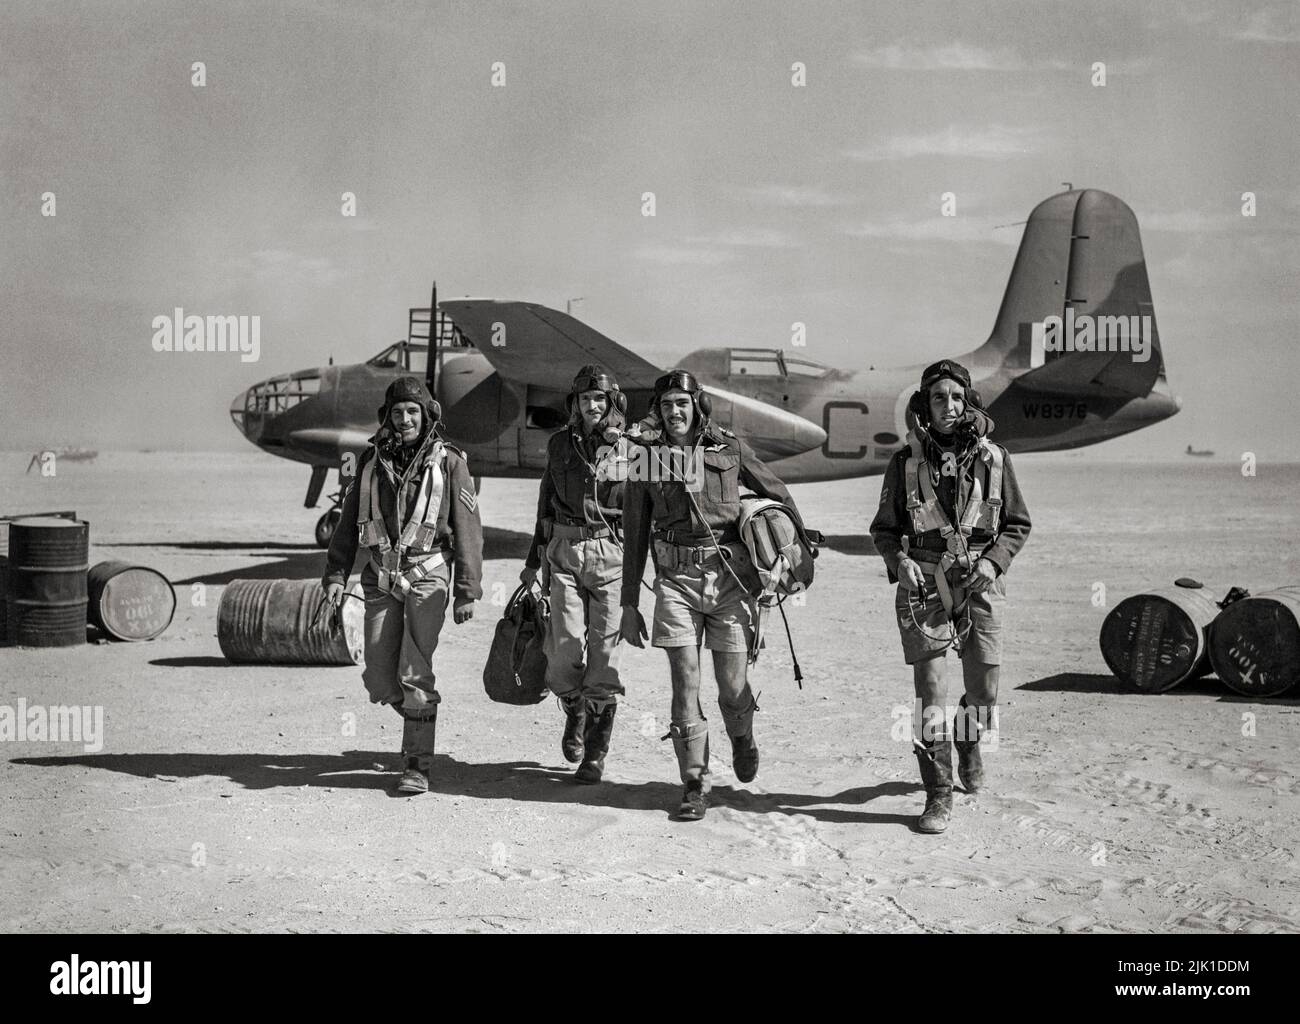 La tripulación de Douglas Boston Mark III del Escuadrón nº 24, de la Fuerza Aérea Sudafricana, se alejó de sus aviones en un aeródromo en Libia después de una sortie. El Boston fue un bombardero medio americano, avión de ataque, intruso nocturno, caza nocturno y avión de reconocimiento de la Segunda Guerra Mundial Foto de stock